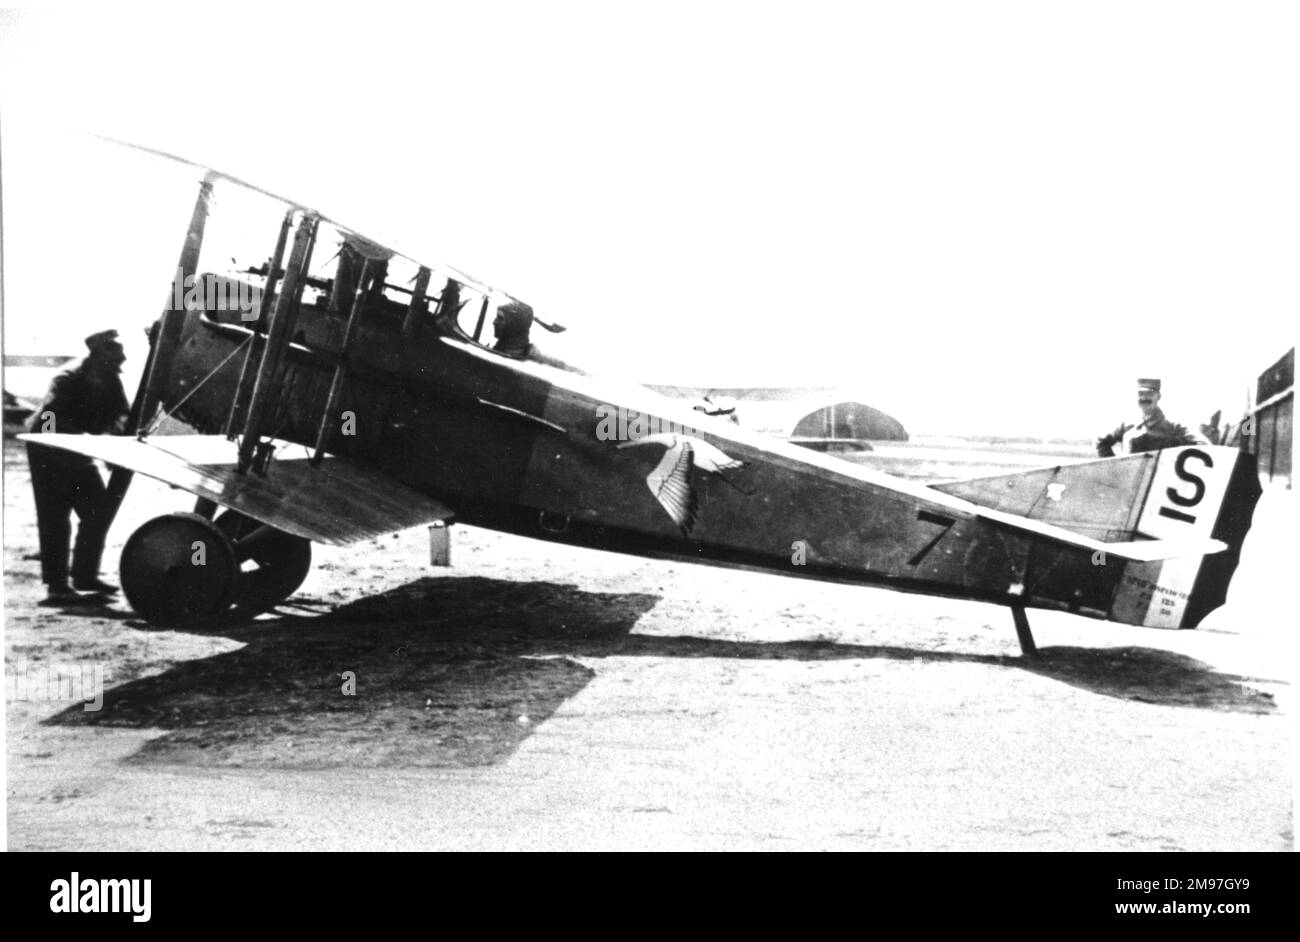 SPAD S VII, un avion de chasse français de premier plan introduit en 1916. L'emblème de la cigogne peint sur le côté l'identifie comme appartenant au célèbre Groupe de chasse 12 commandé par Felix Brocard. Banque D'Images